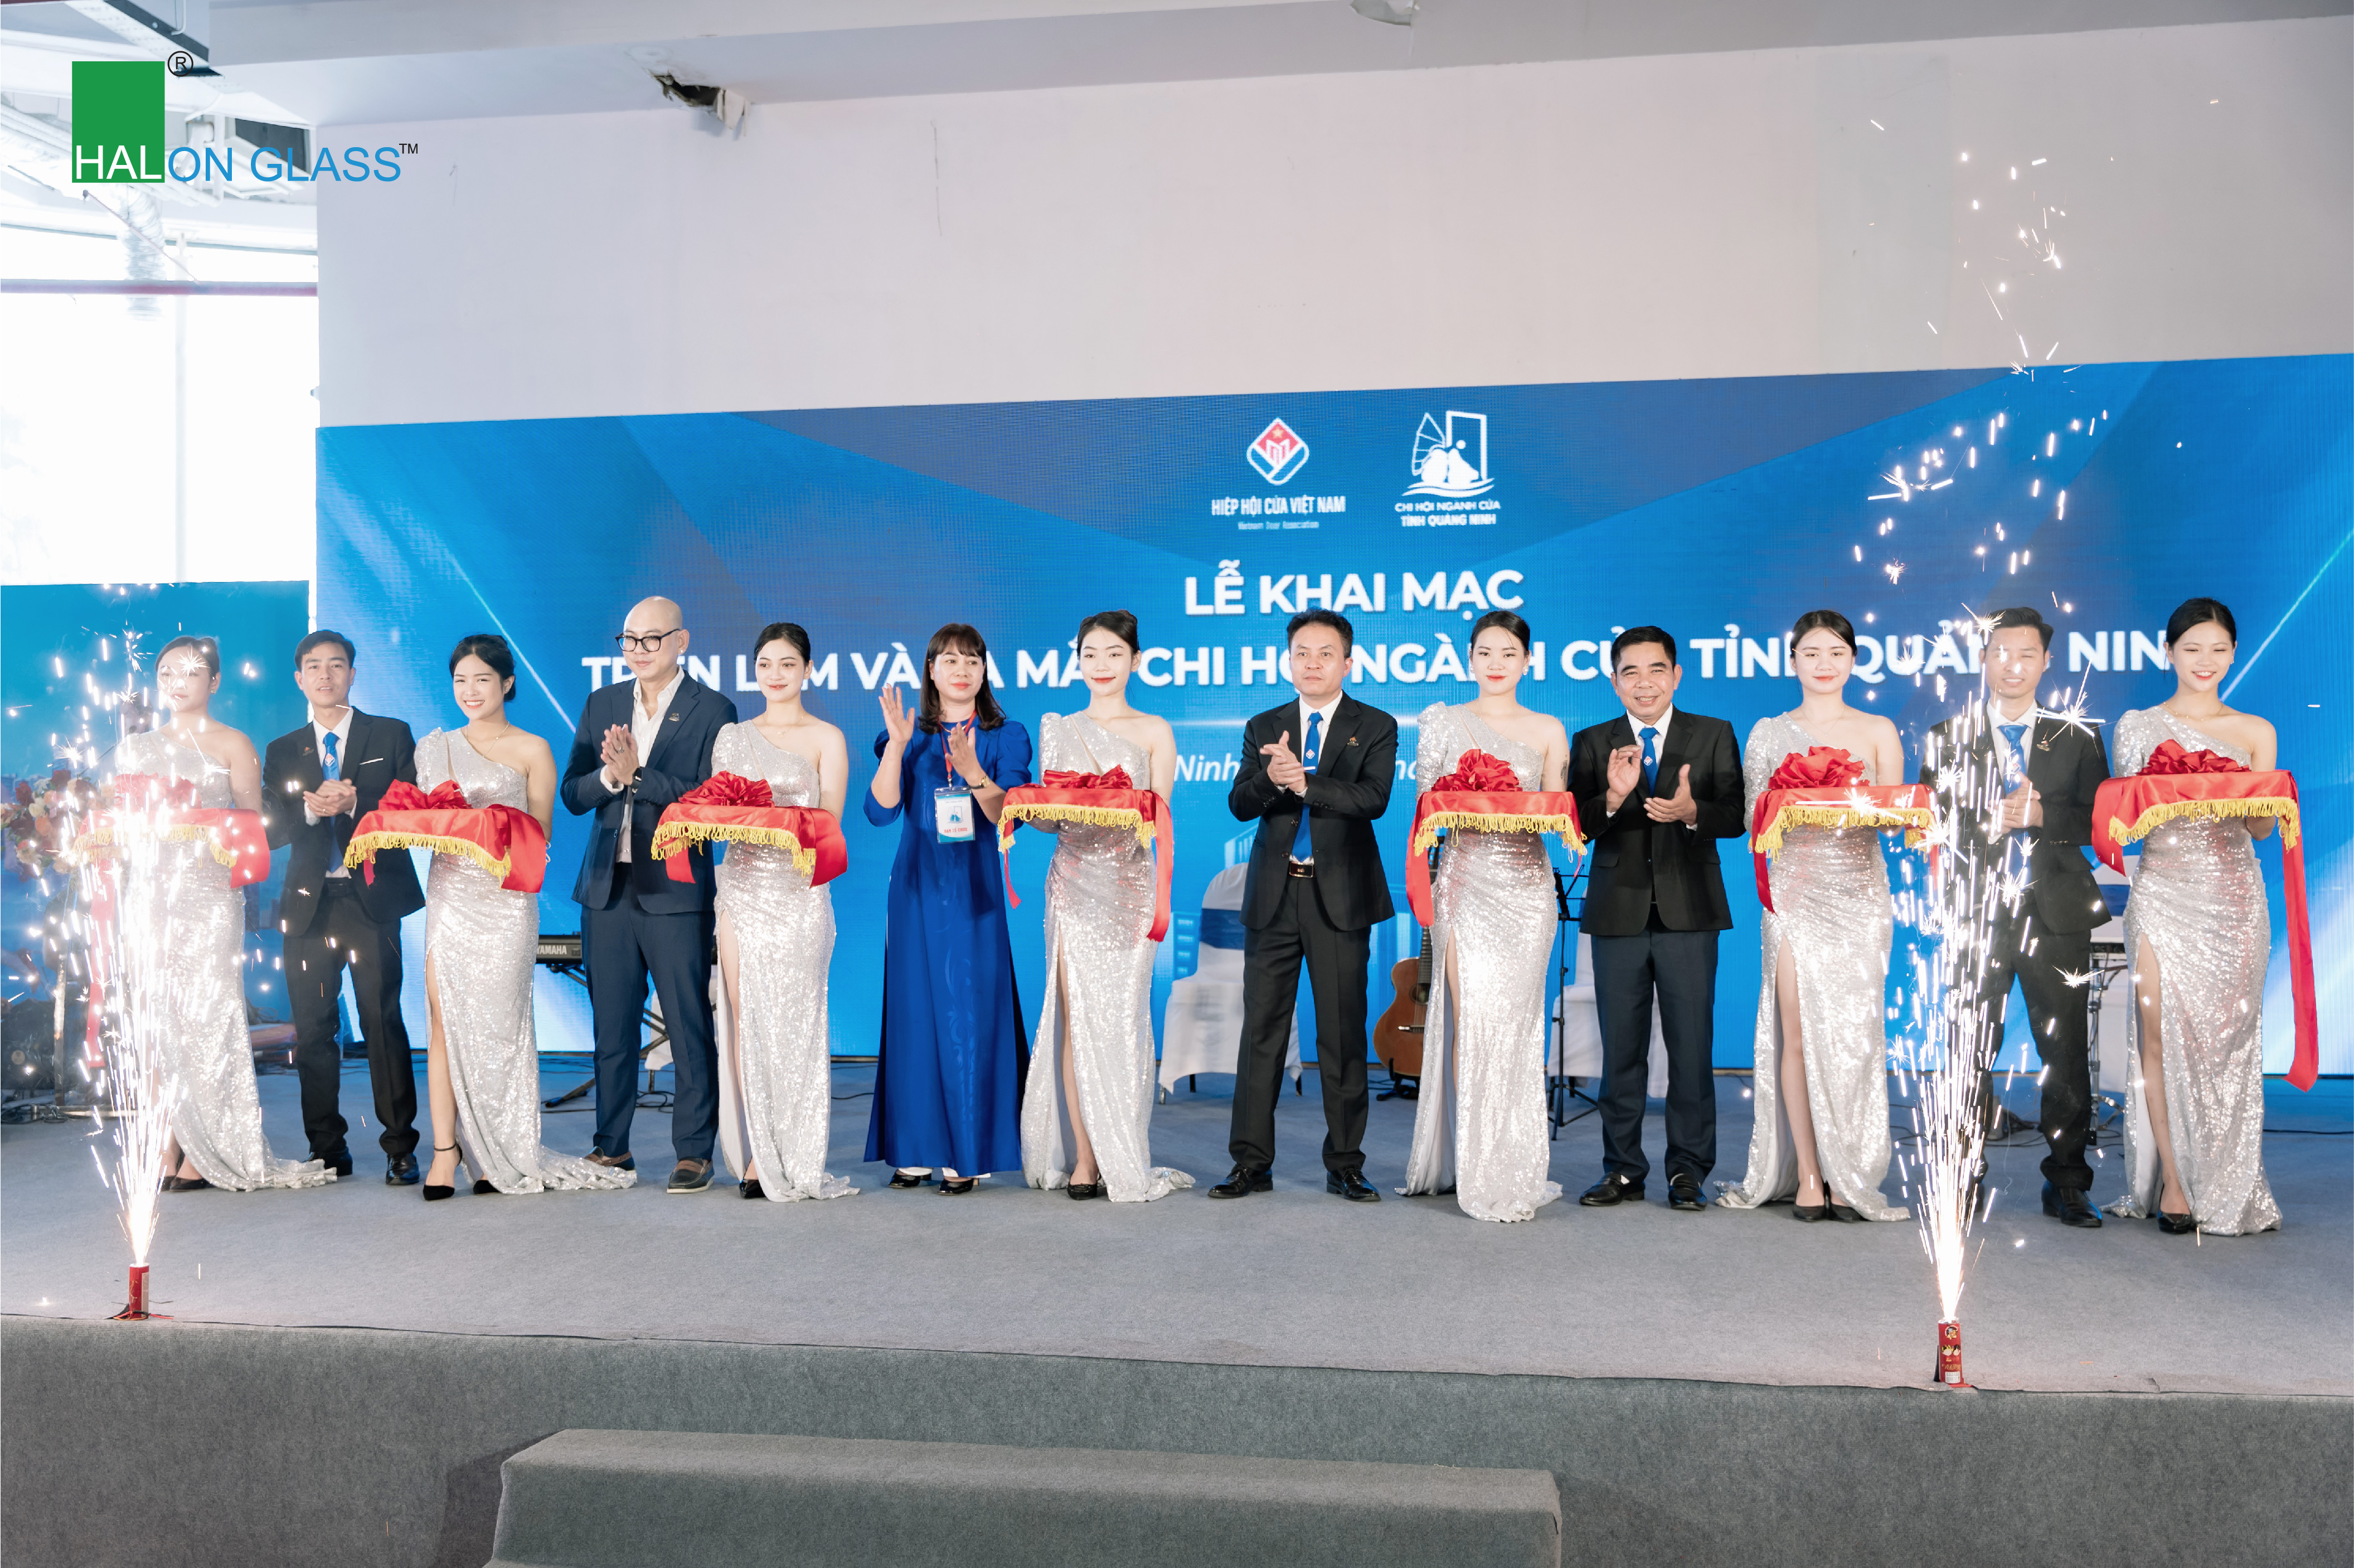 Hải Long Glass đồng hành cùng sự kiện ra mắt Chi hội Ngành cửa tỉnh Quảng Ninh